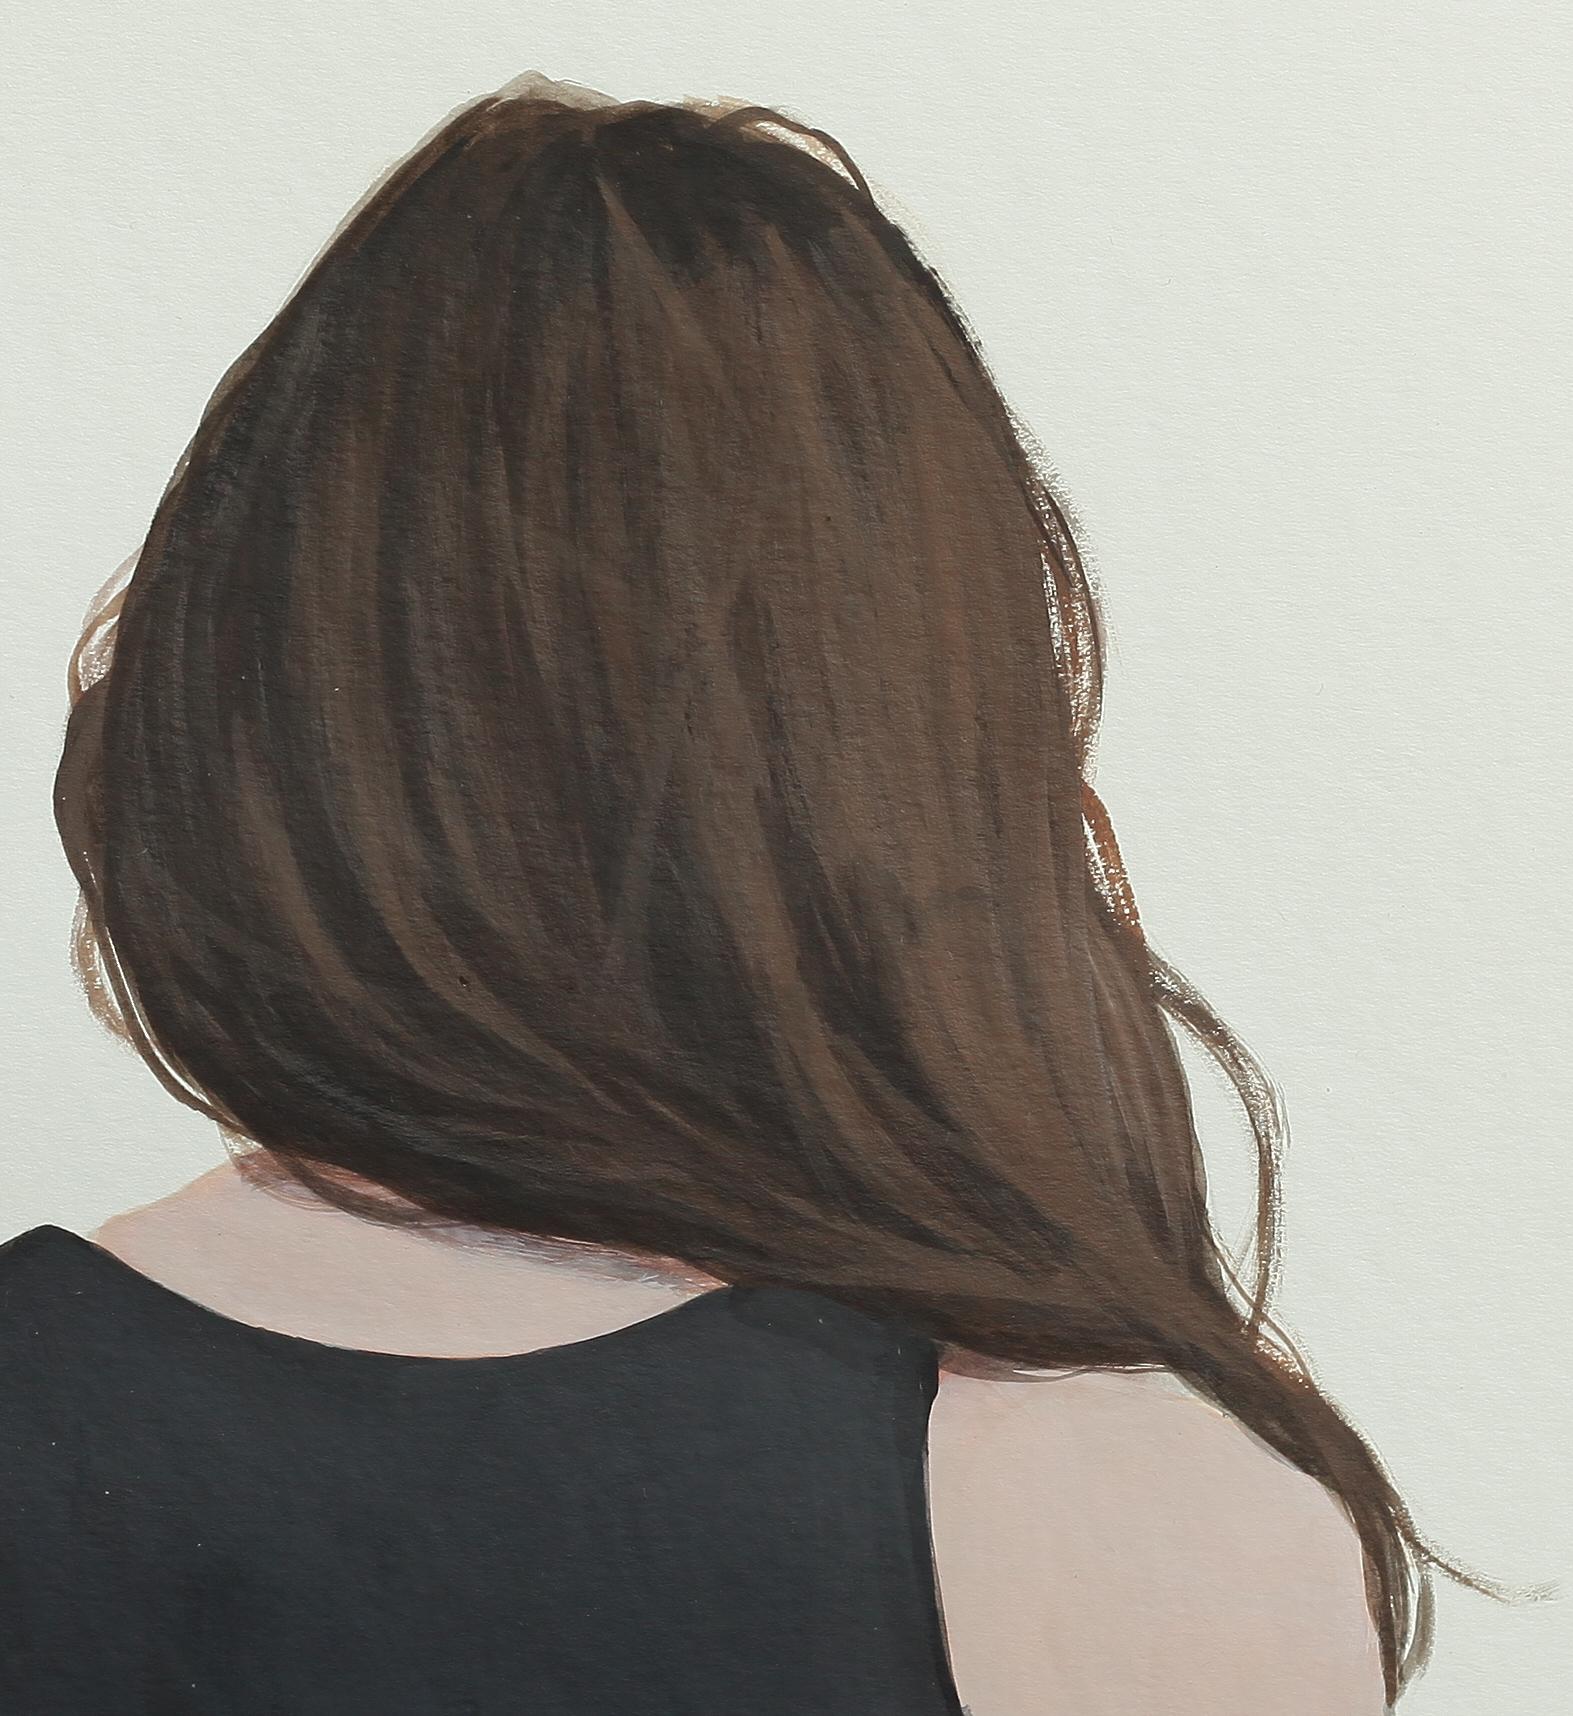 « Back Portrait IX » - Peinture contemporaine de portrait d'une fille  - Contemporain Painting par Karoline Kroiss